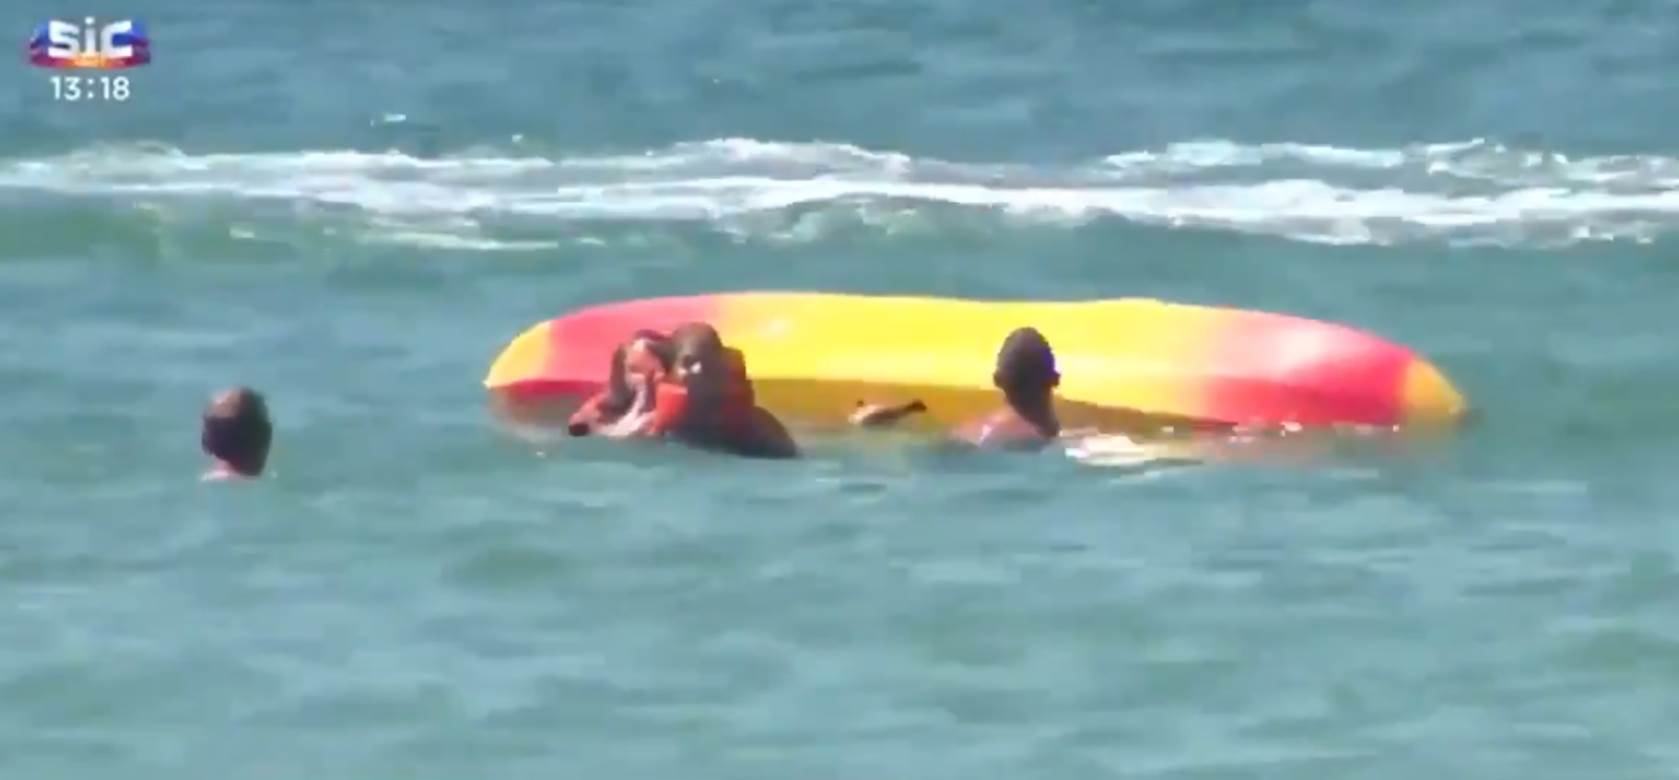  ŠMEKERSKI: Predsednik (71) SPASAO dve žene na moru, bacio se u talase, otplivao do njih i dovukao ih na sigurno 